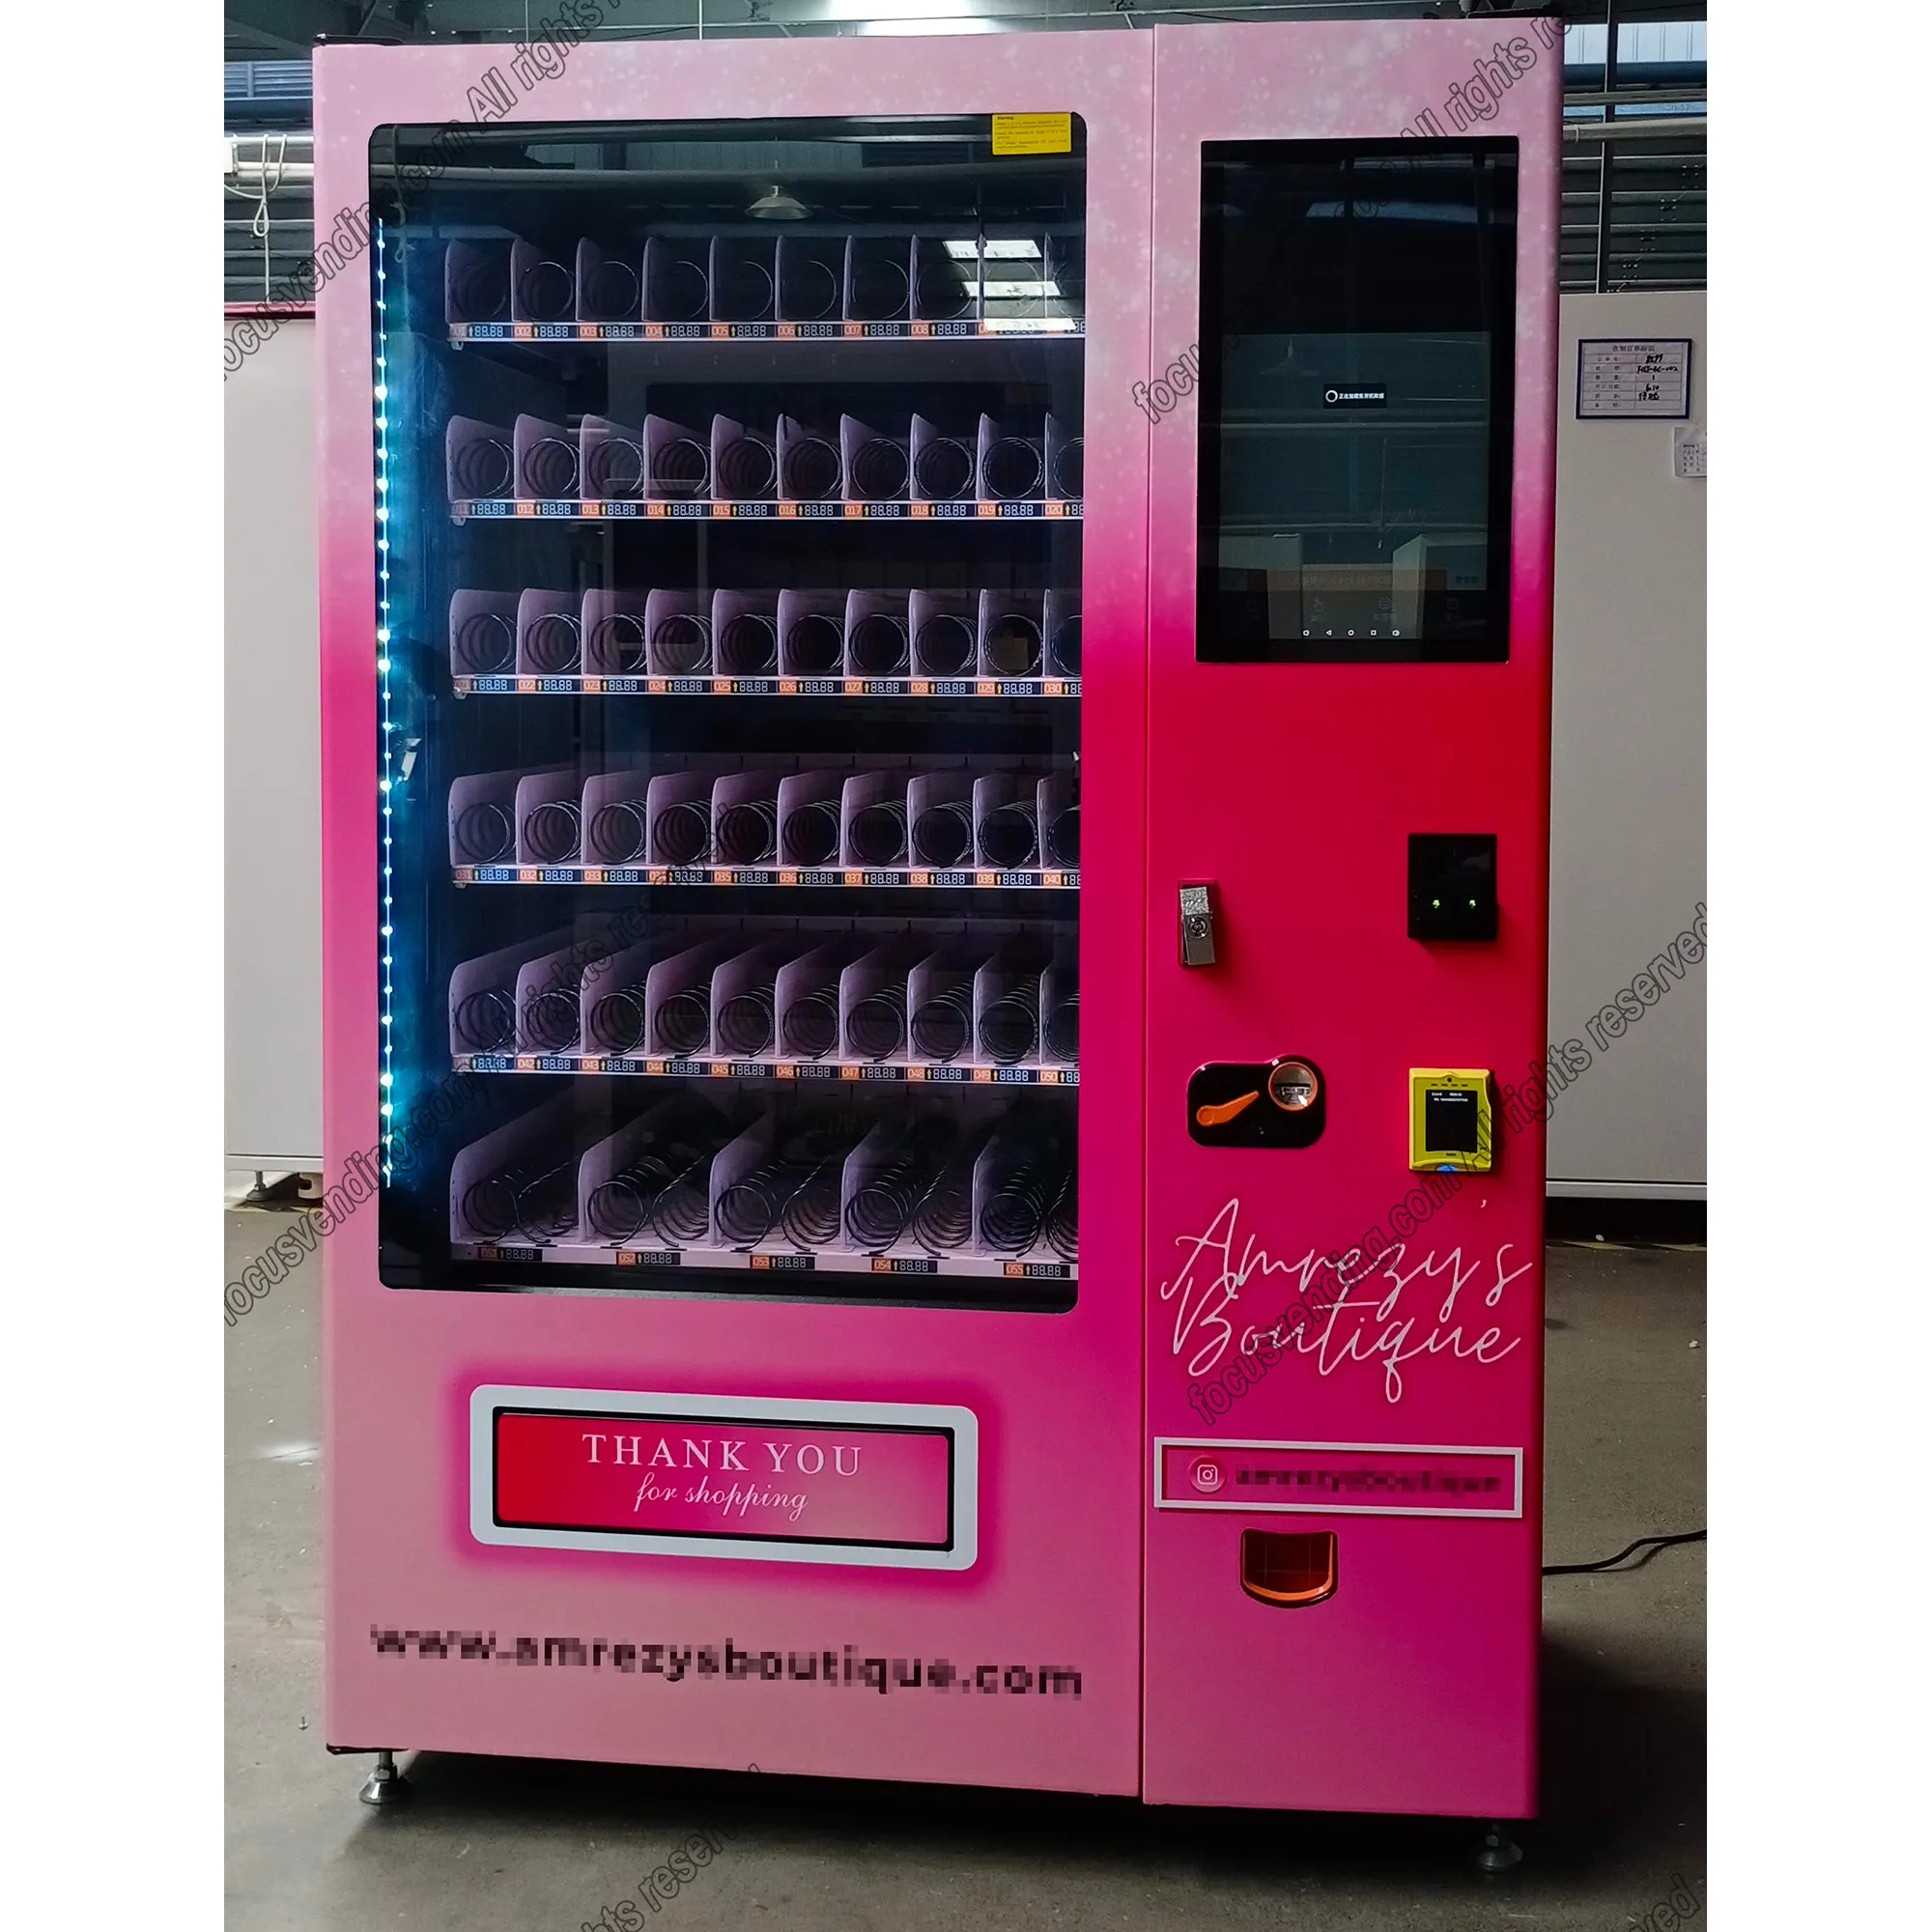 Unbemannter Verkaufs automat, temperatur gesteuerter Verkaufs automat und automatischer Automaten automat